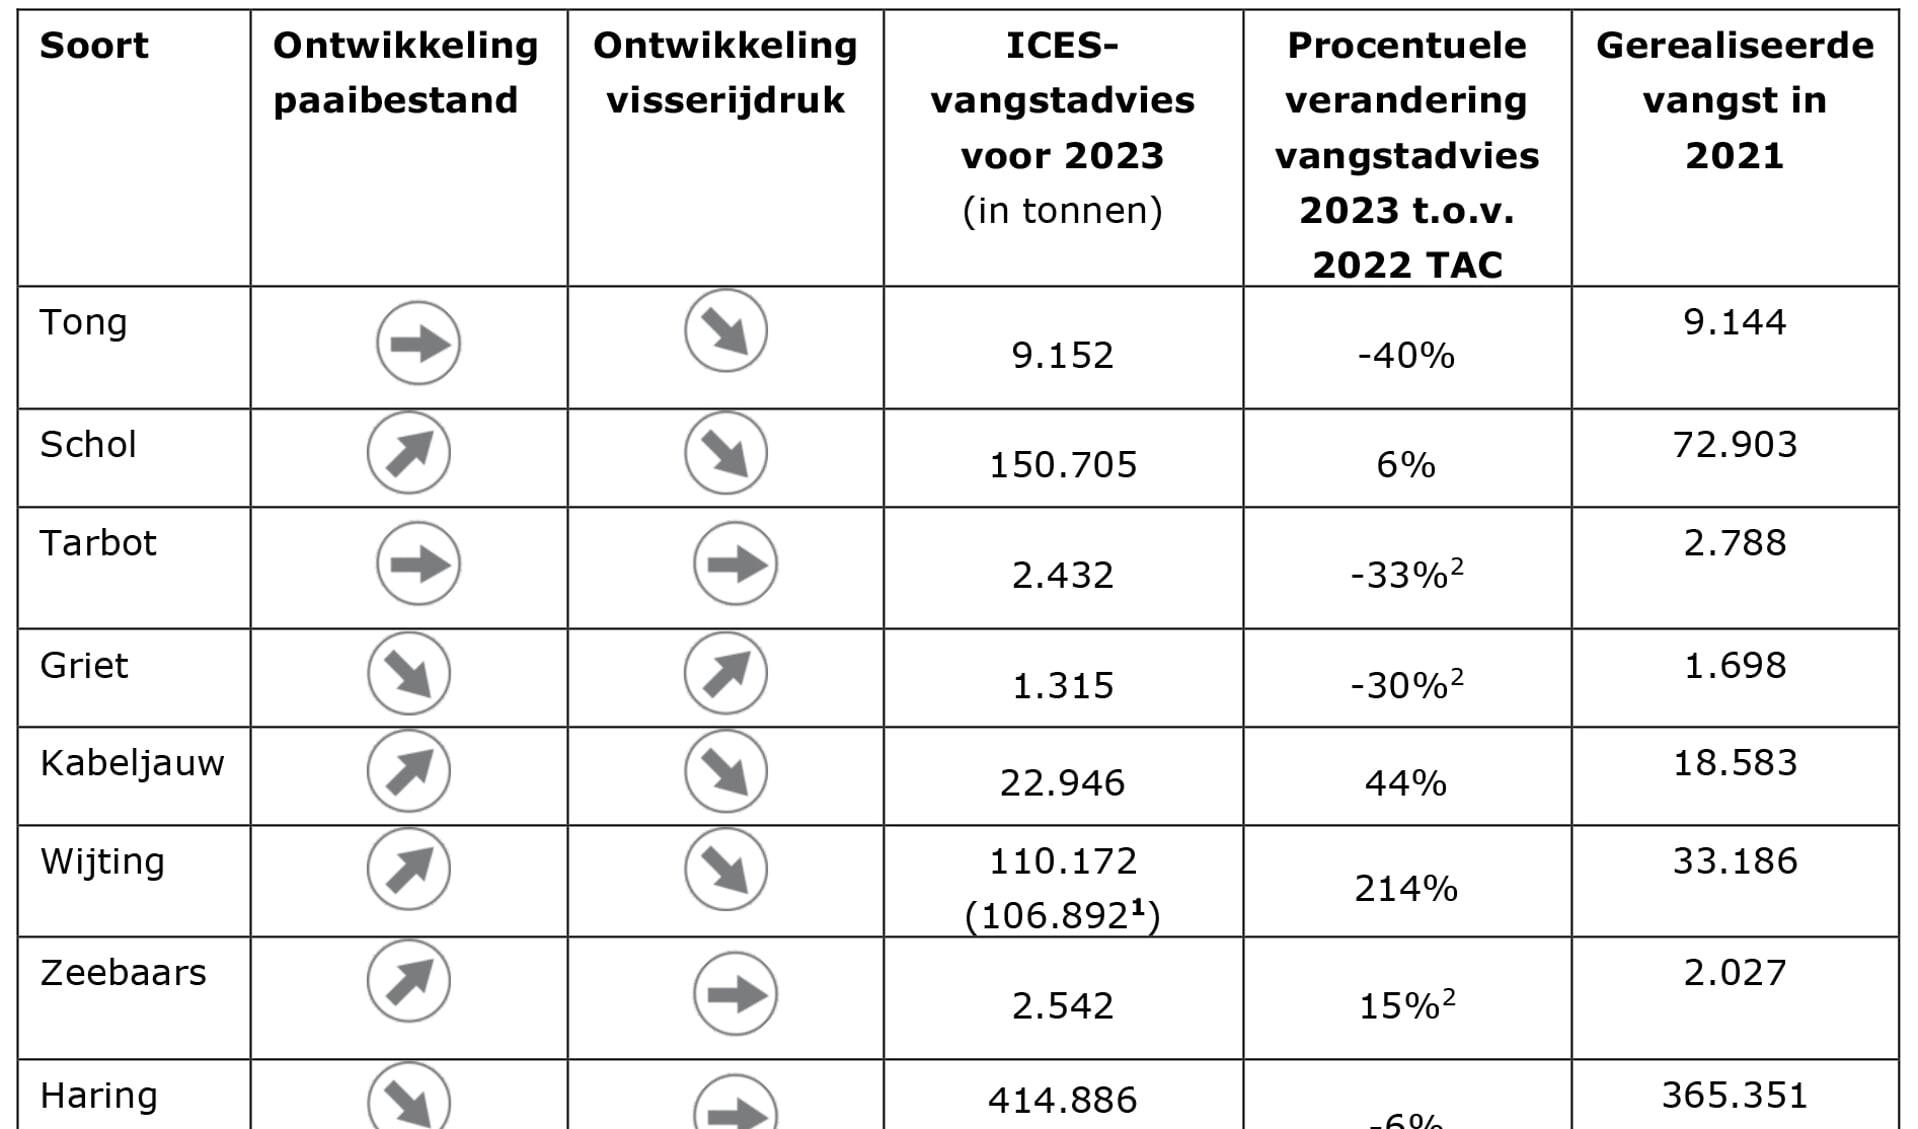 H Tabel: Ontwikkelingen paaibestanden en visserijdruk, en ICES-advies voor 2023 (in tonnen) voor vissoorten die belangrijk zijn voor de Nederlandse visserij.  Bij de wijting en haring staat het advies voor menselijke consumptie in de Noordzee tussen haakjes. De procentuele veranderingen bij tarbot, griet en zeebaars is ten opzichte van het advies voor 2022.Tarbot en griet is een gecombineerde TAC. Voor zeebaars is geen TAC afgesproken.